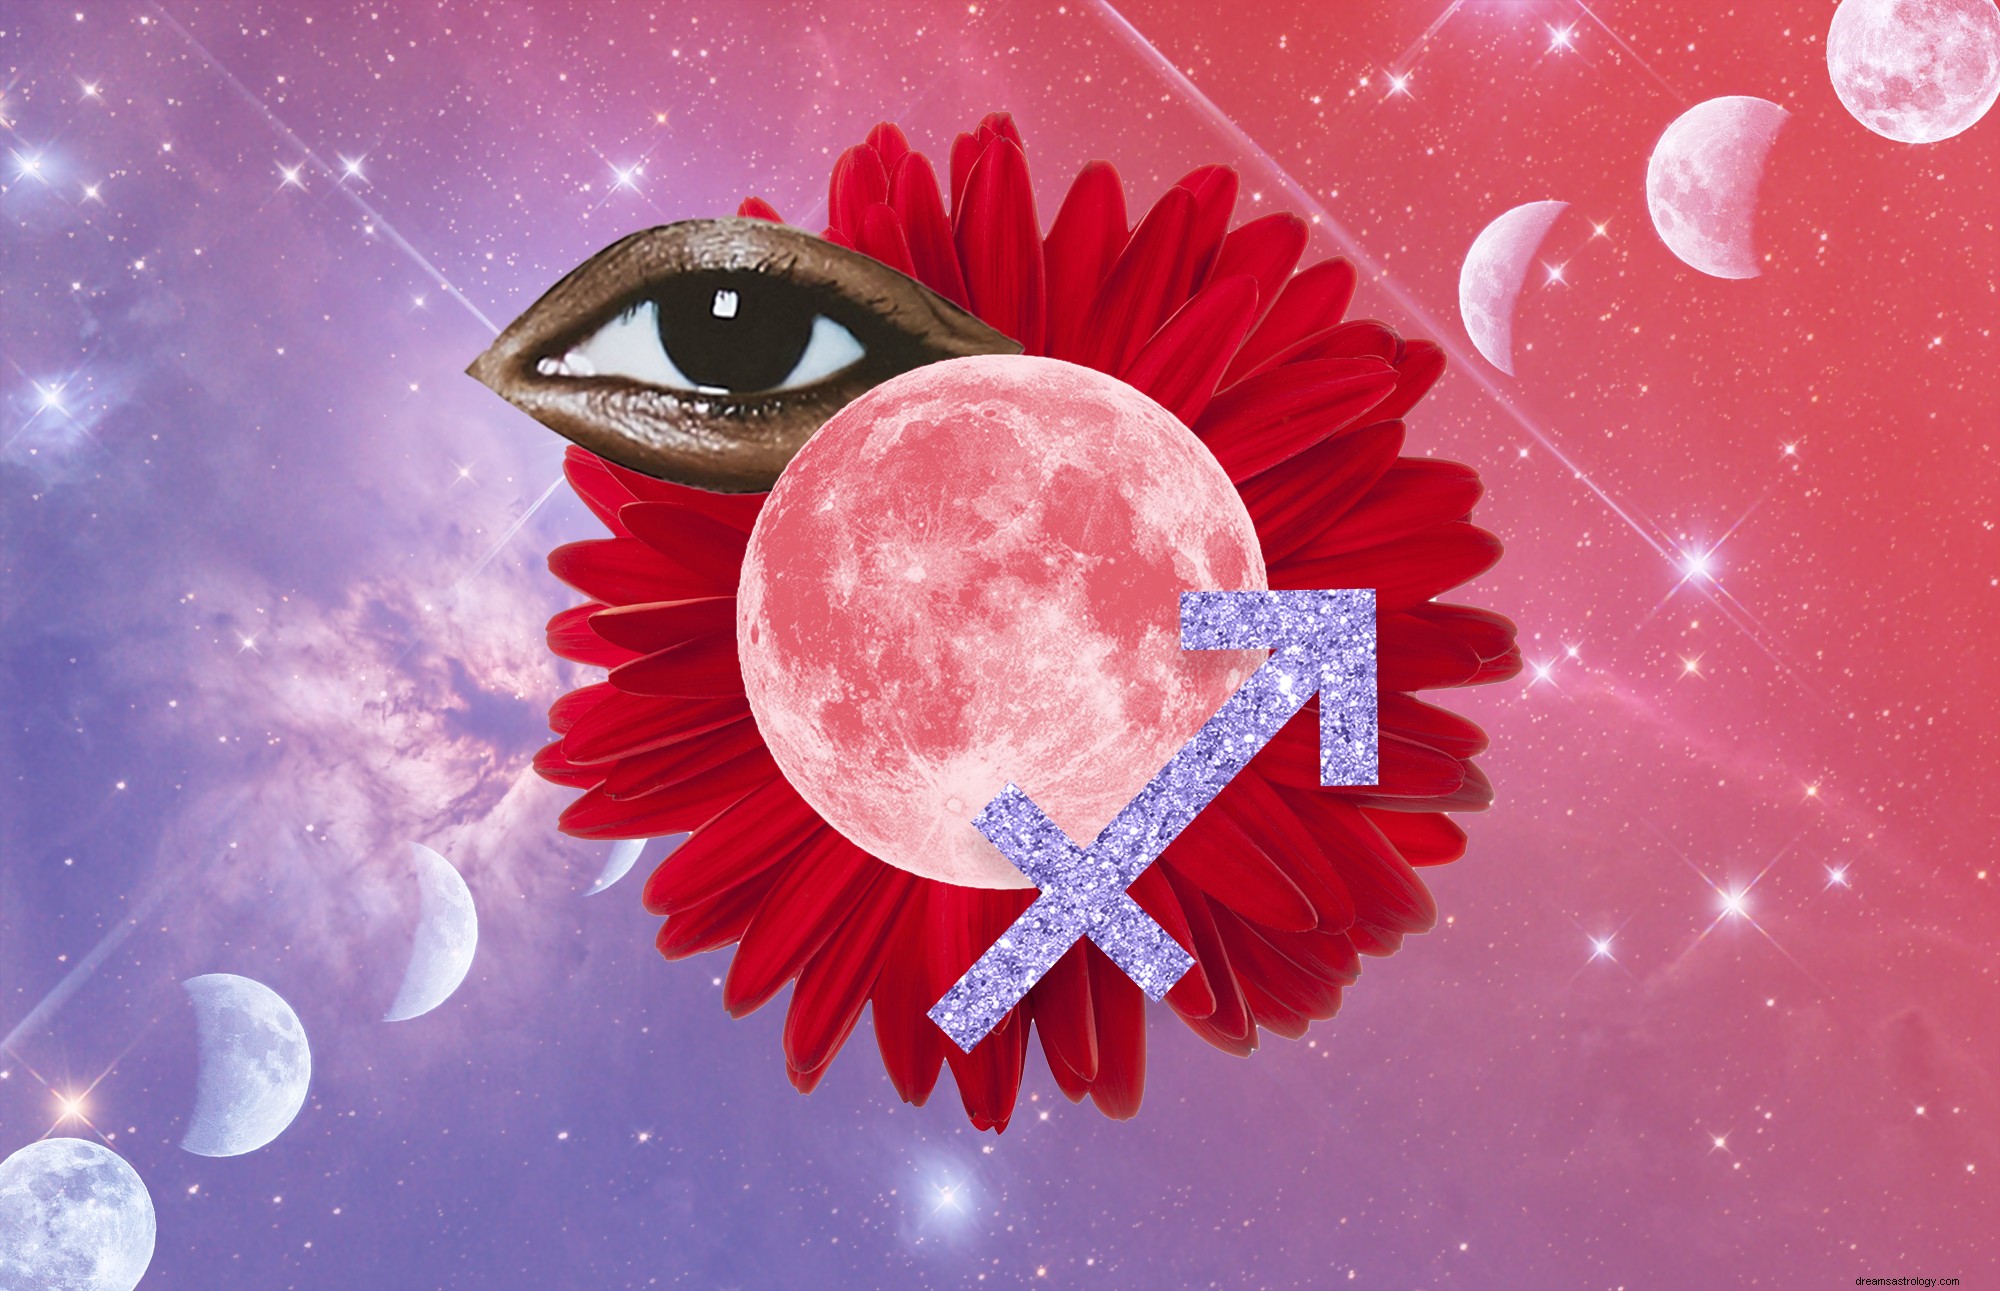 Mai 2021s Super Flower Blood Moon Måneformørkelse kan kaste deg inn i neste kapittel av livet ditt 